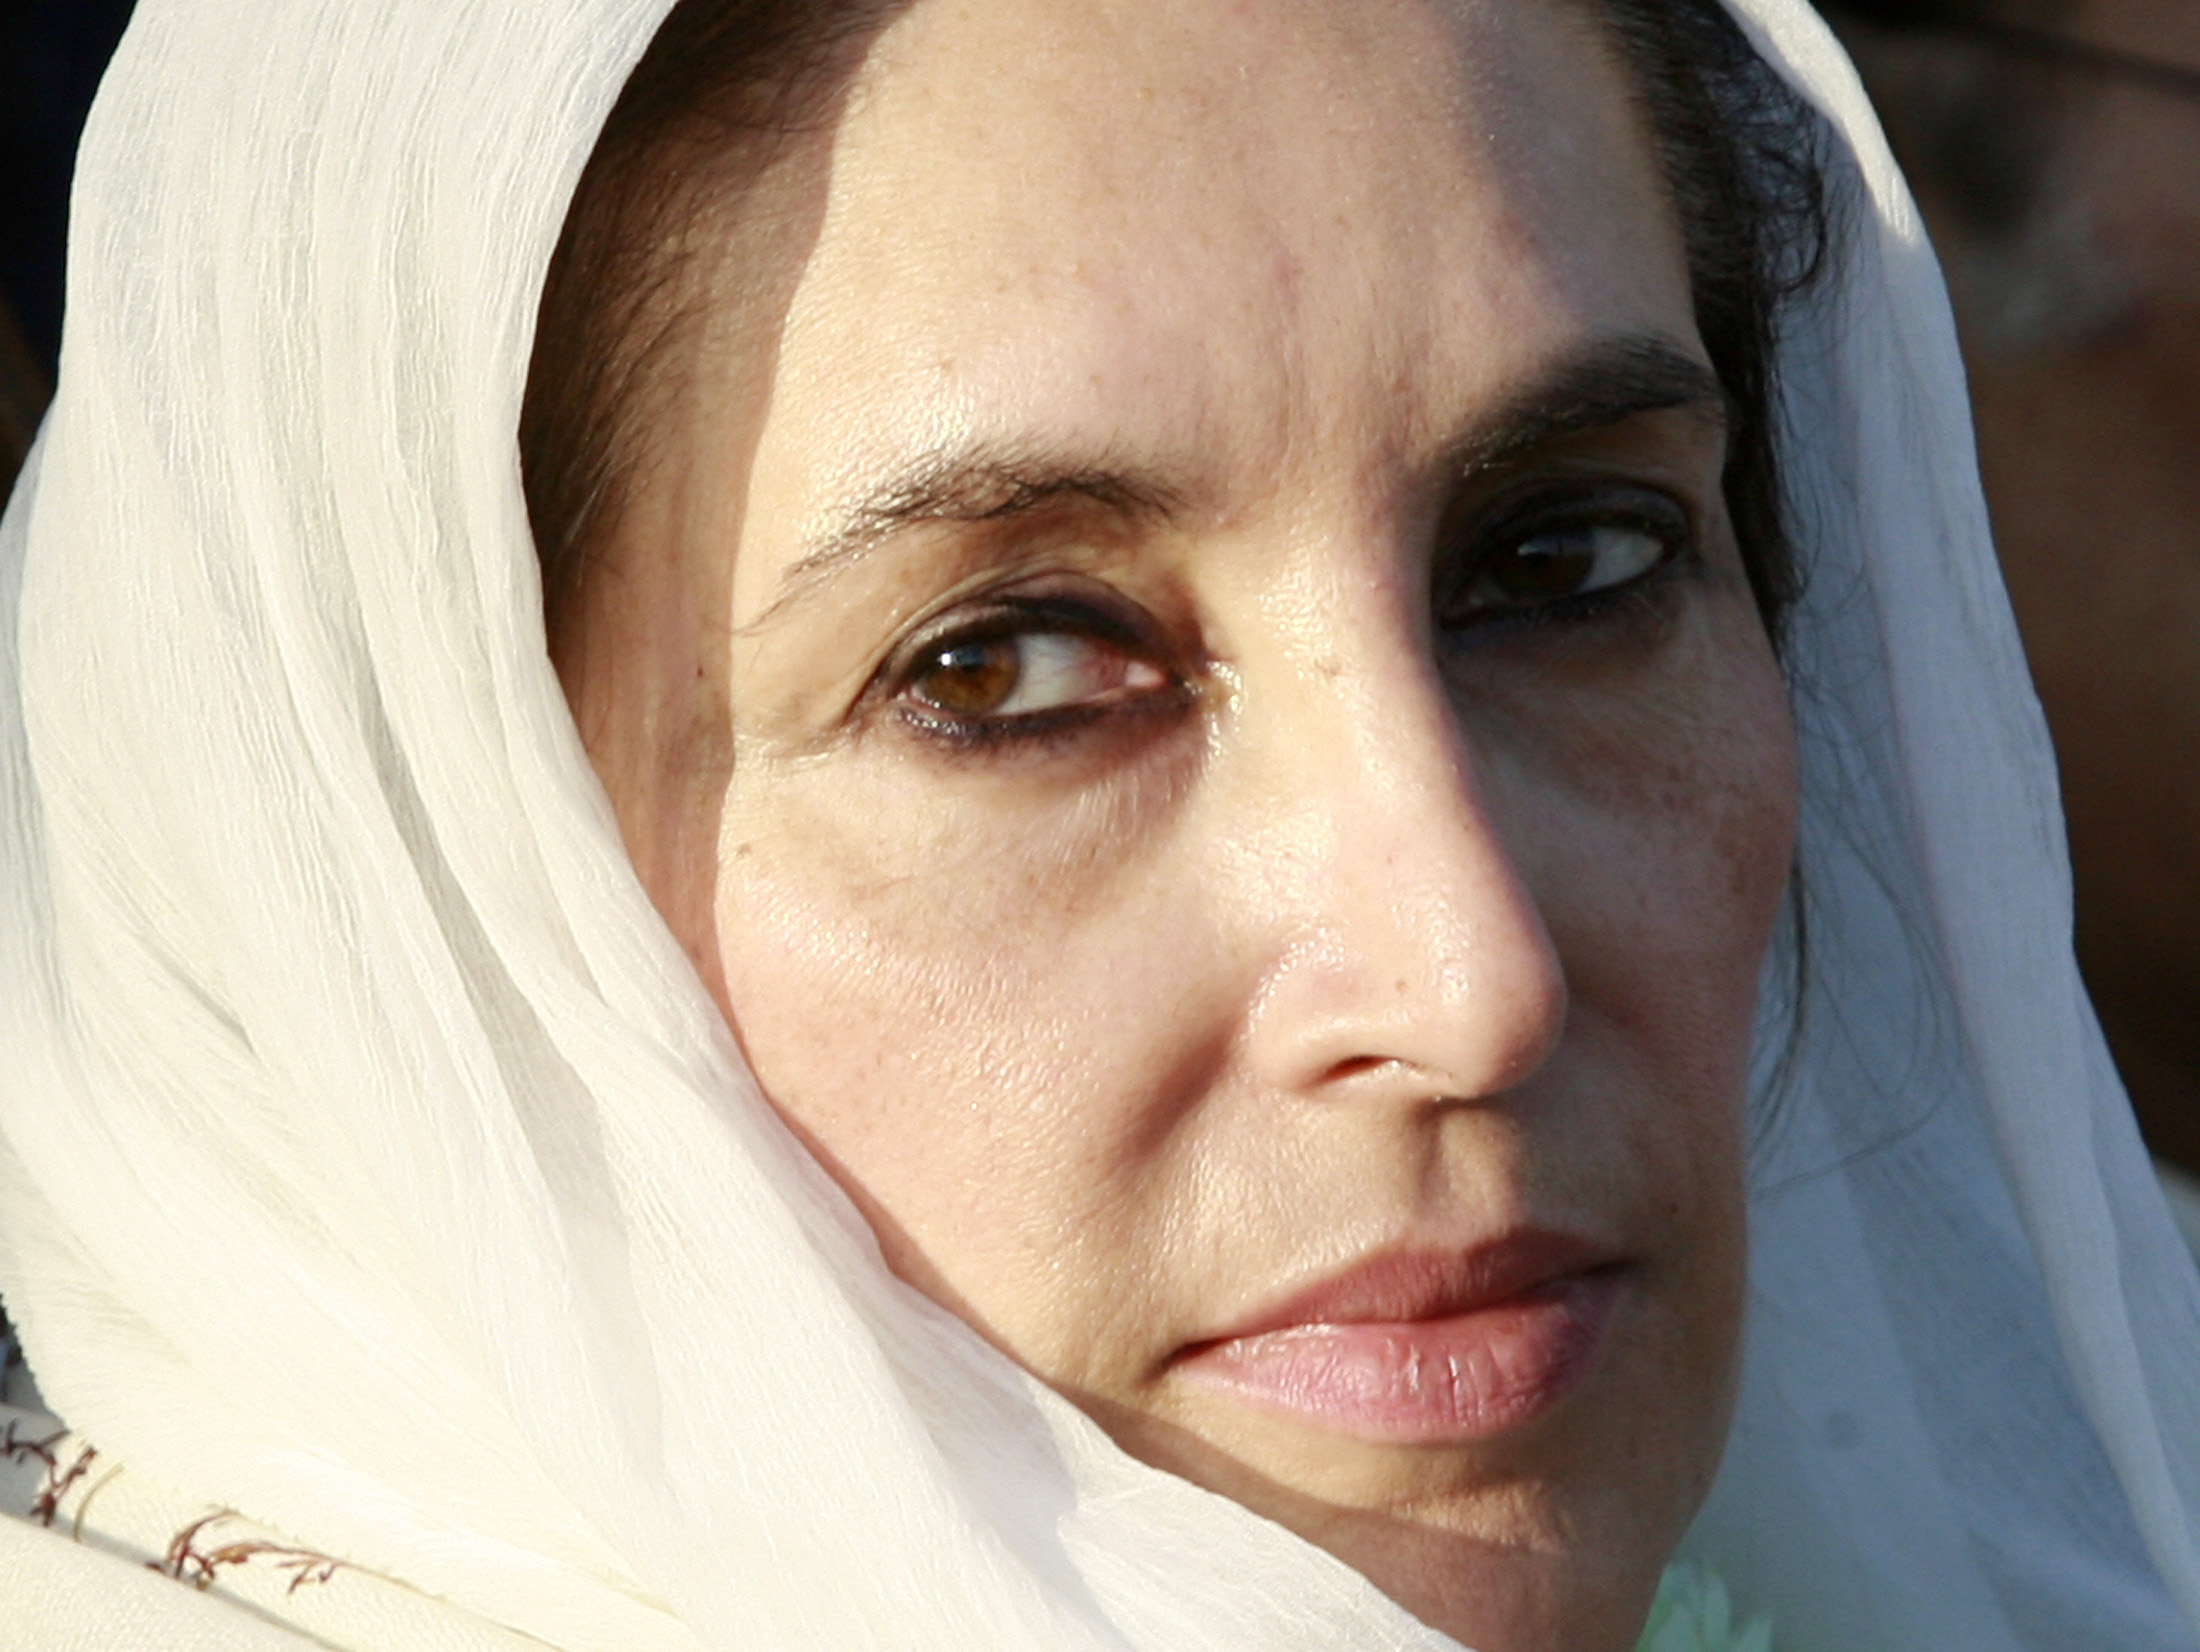 Η Μπεναζίρ Μπούτο, είχε διατελέσει δυο φορές πρωθυπουργός του Πακιστάν. Απόπειρα δολοφονίας της είχε γίνει και στις 18 Οκτωβρίου του 2007 όταν επέστρεψε από την εξορία. Τότε, στο Καράτσι, είχε σωθεί από την επίθεση καμικάζι αλλά είχαν σκοτωθεί 140 άνθρωποι - ΦΩΤΟΓΡΑΦΙΑ REUTERS